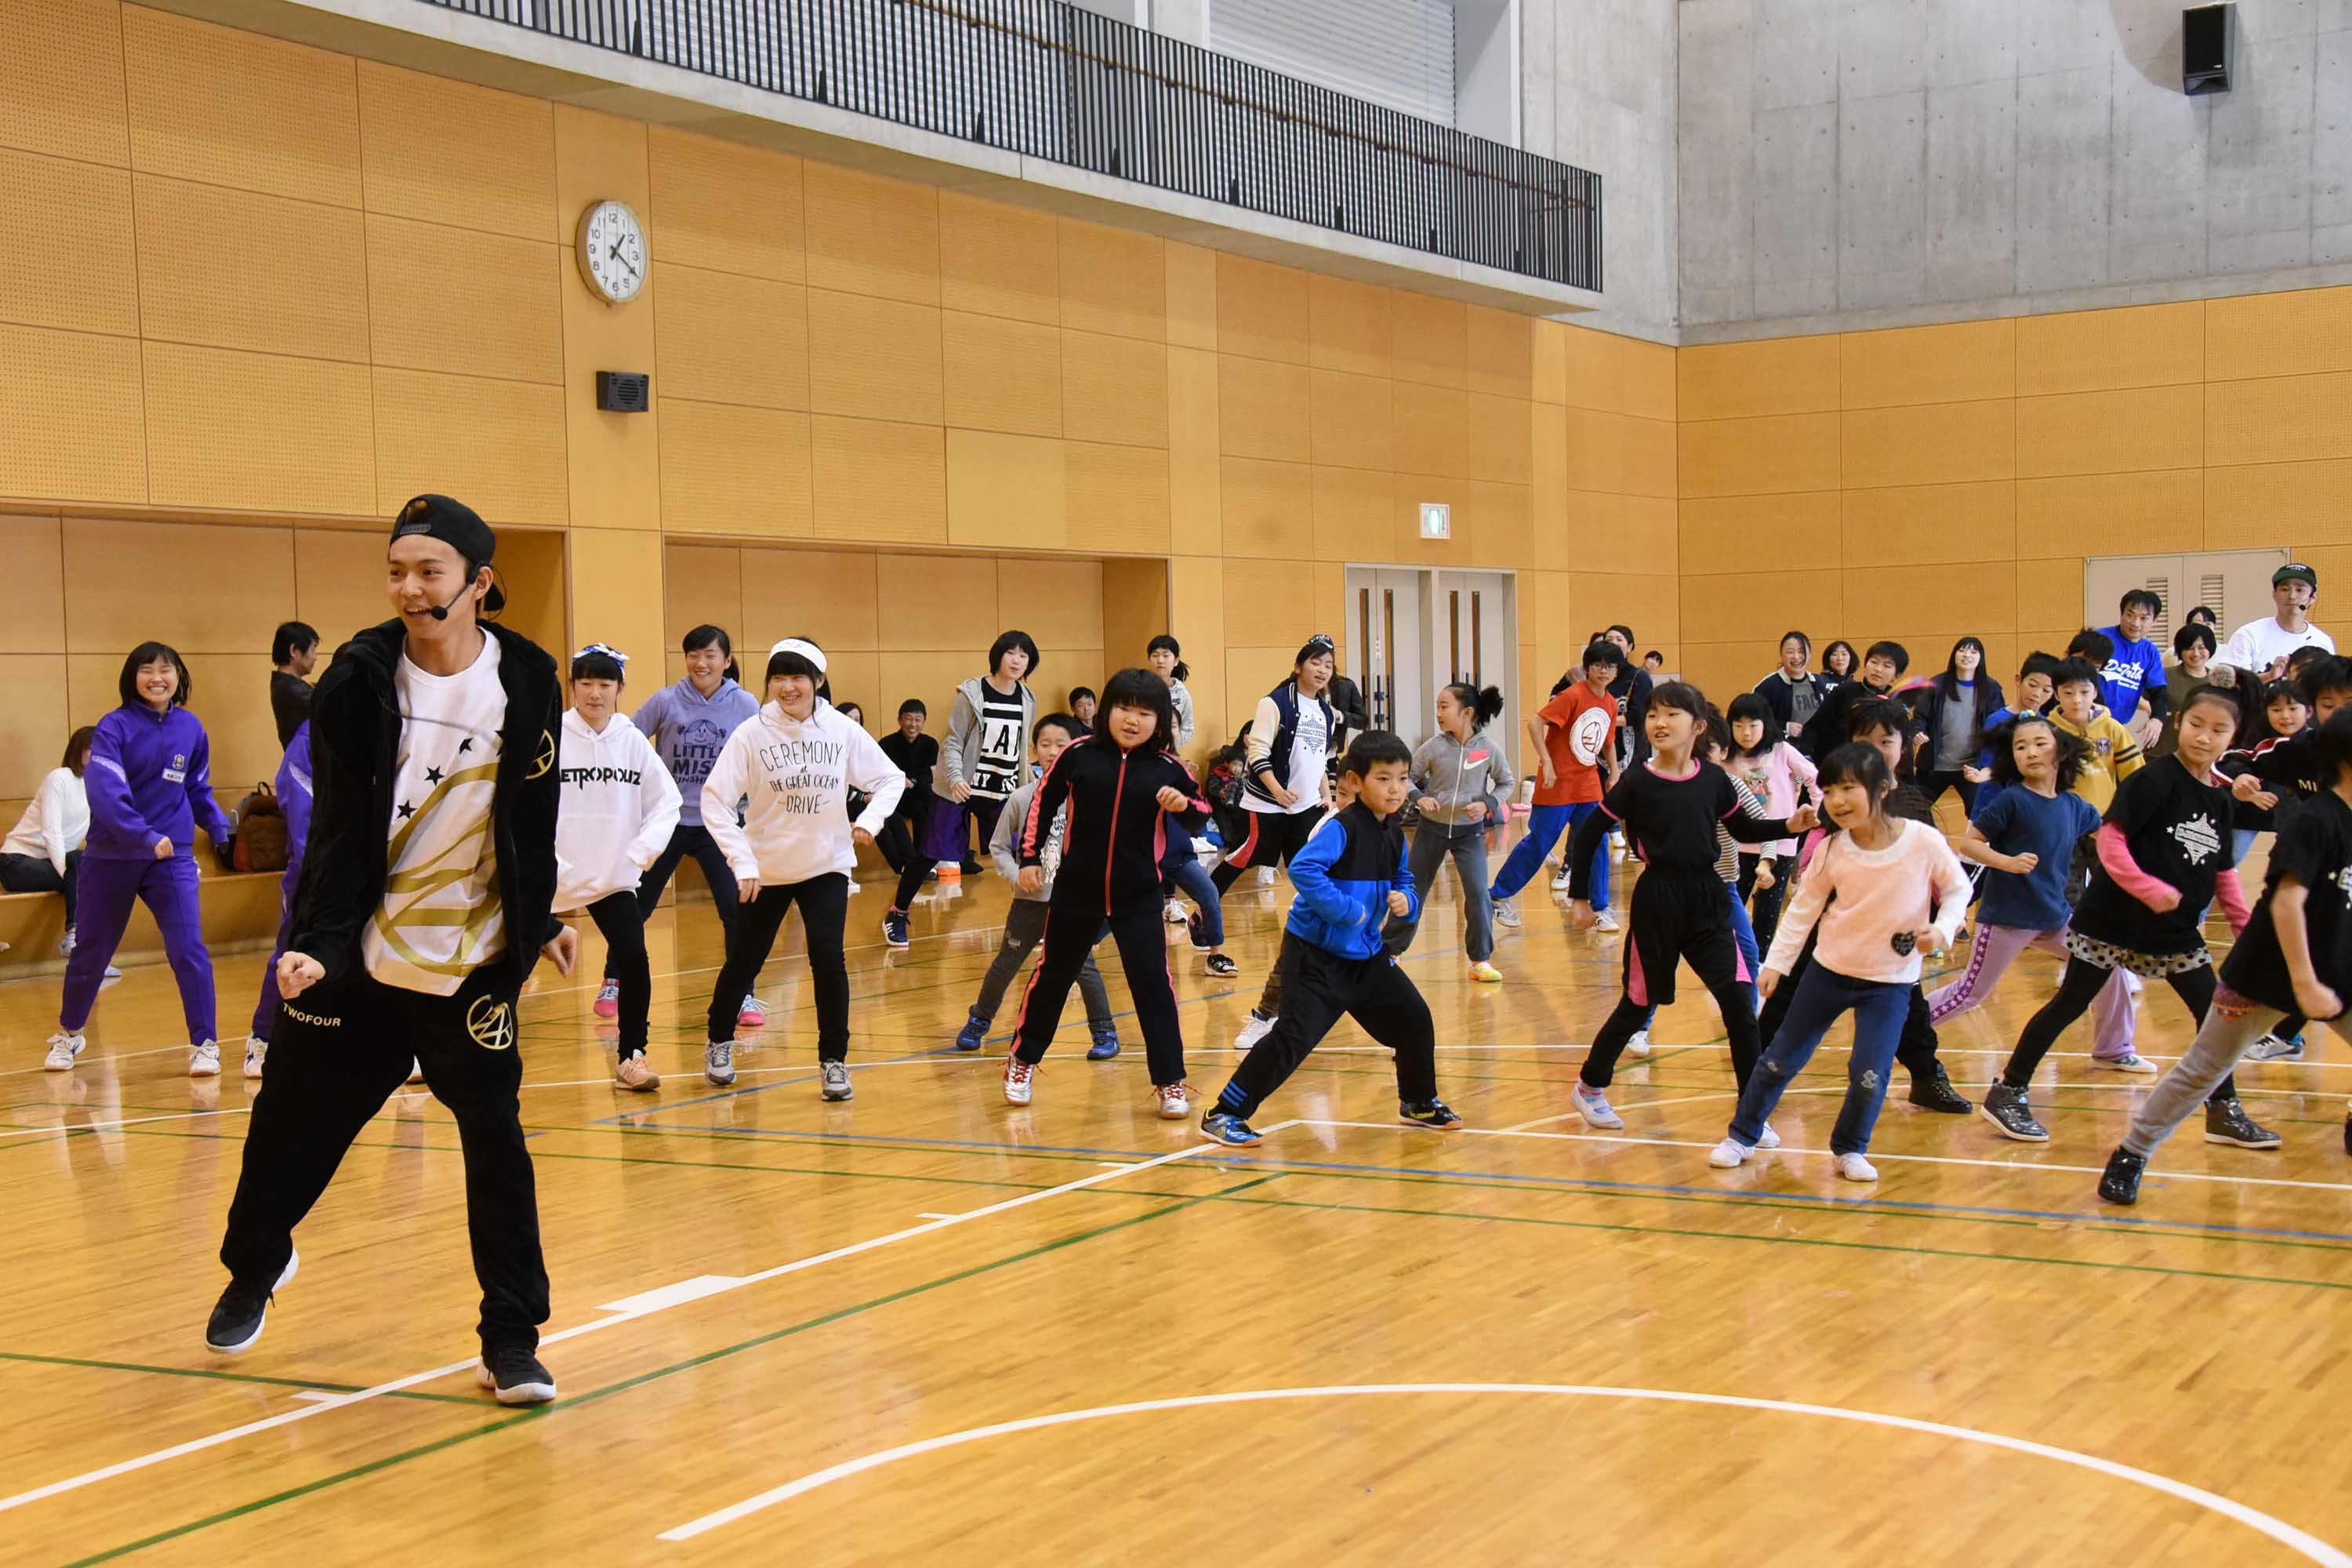 ダンスを指導するEXILE佐藤大樹 『夢の課外授業スペシャルin猪苗代』